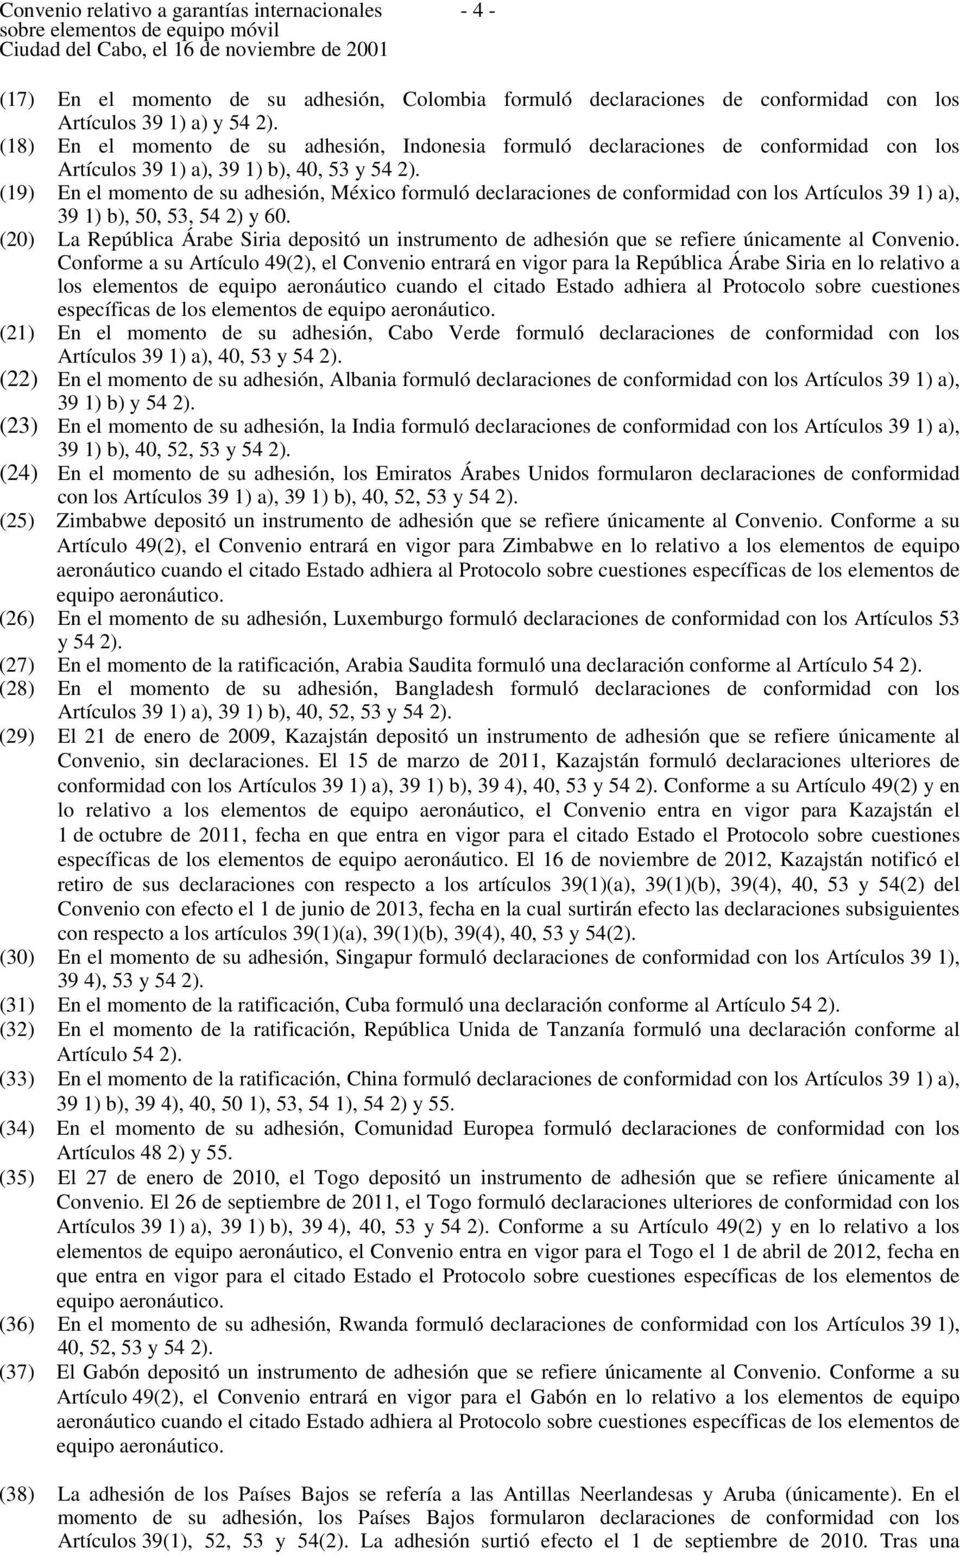 (19) En el momento de su adhesión, México formuló declaraciones de conformidad con los Artículos 39 1) a), 39 1) b), 50, 53, 54 2) y 60.